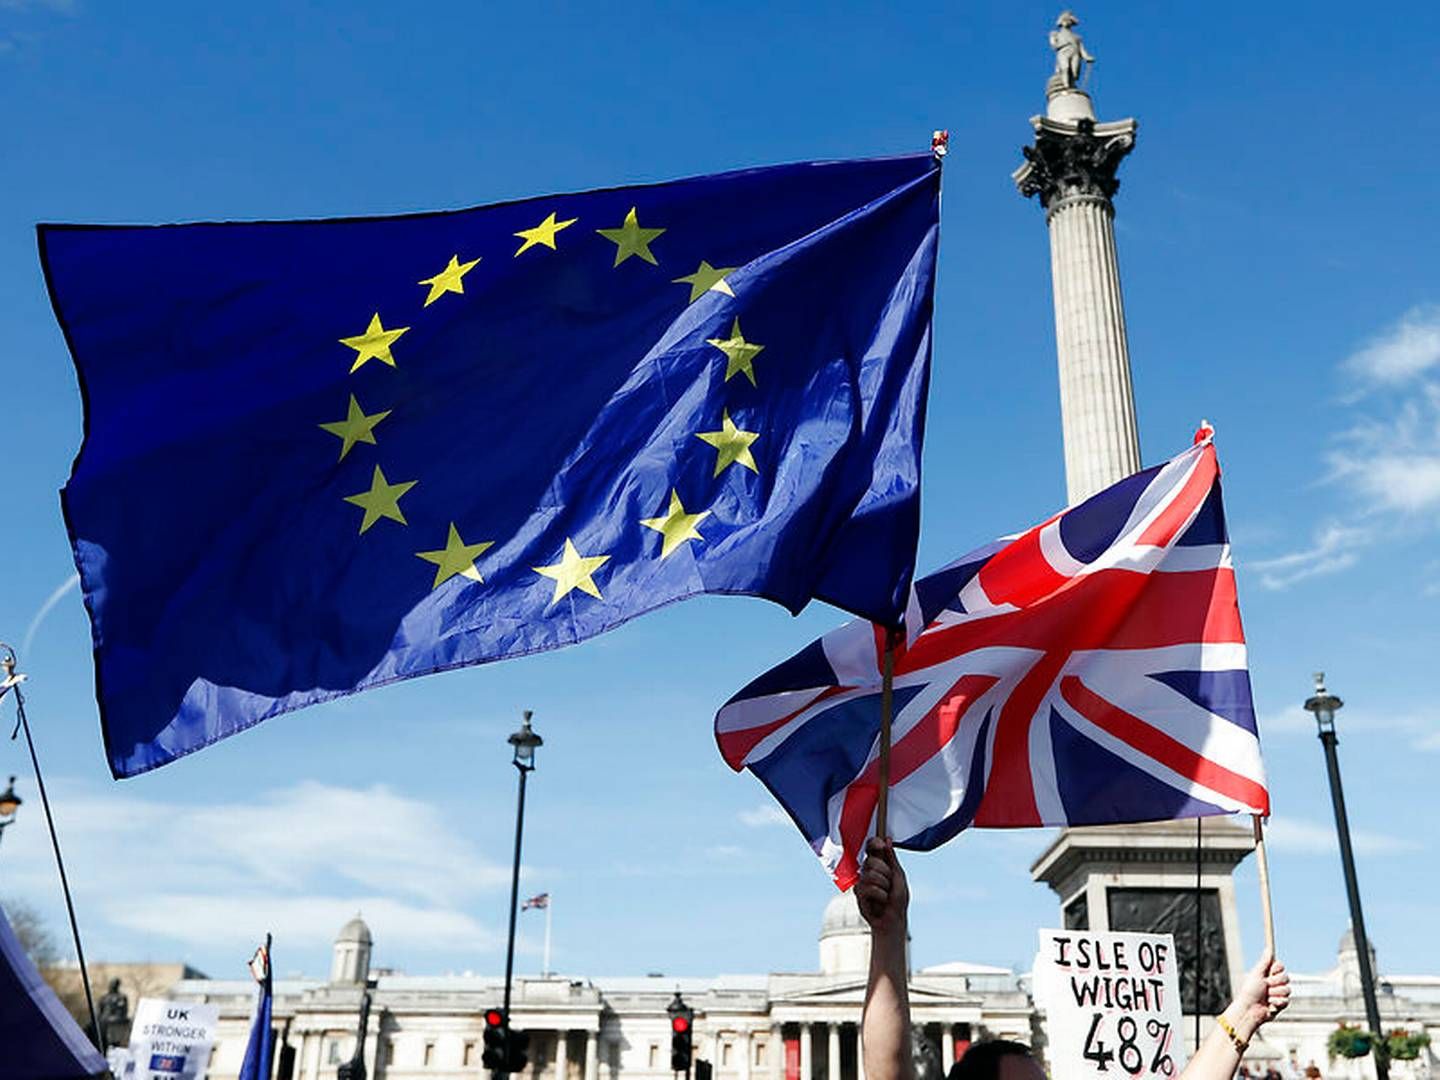 En folkemængde holdt både det britiske og det europæiske flag højt under en demonstration mod brexit på Trafalgar Square i London i marts 2017. | Foto: Kirsty Wigglesworth/AP